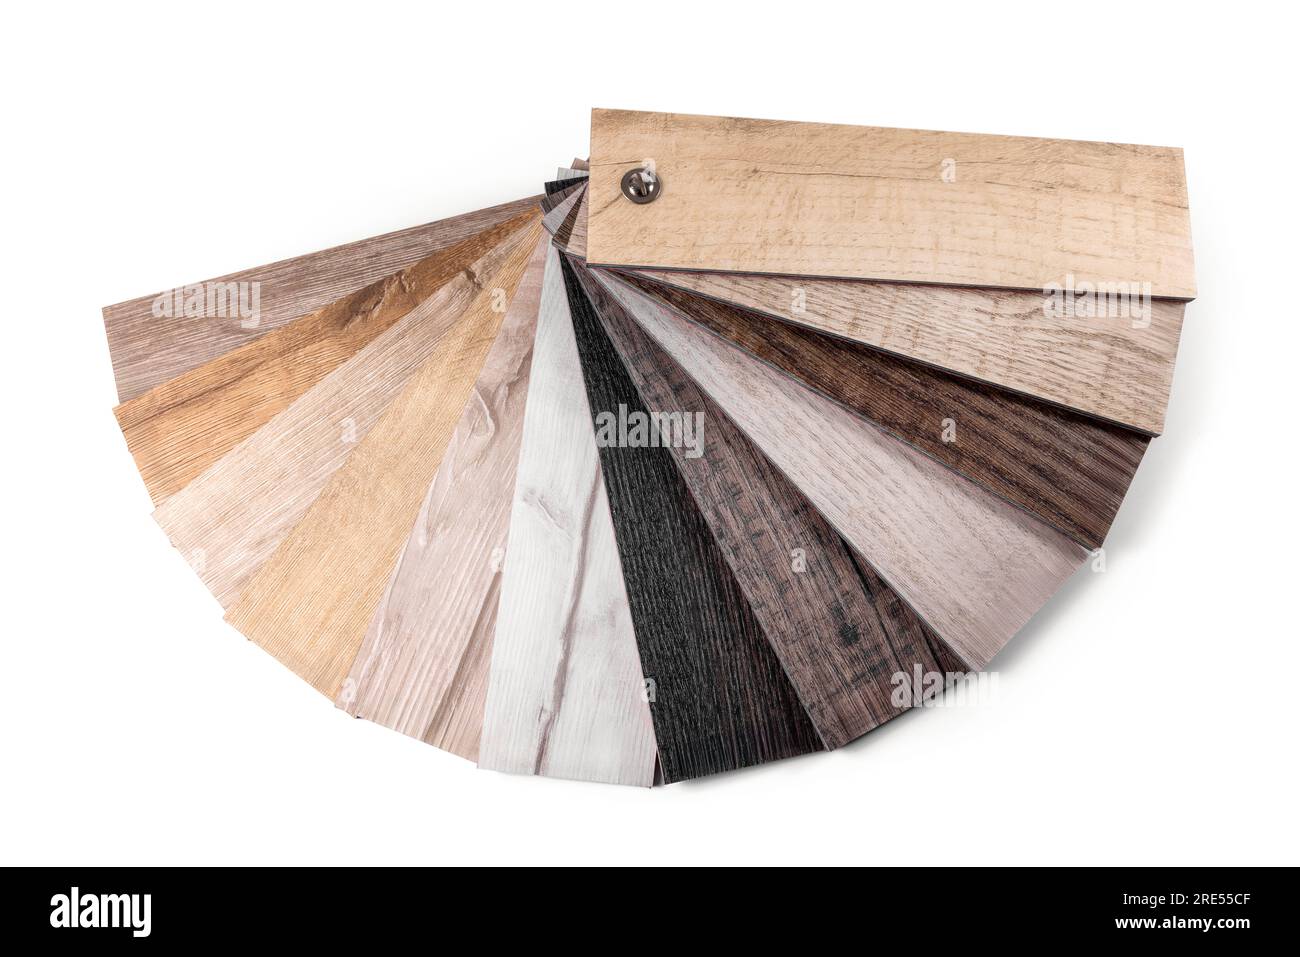 campioni di pavimenti in vinile. struttura in legno. isolato su sfondo bianco Foto Stock